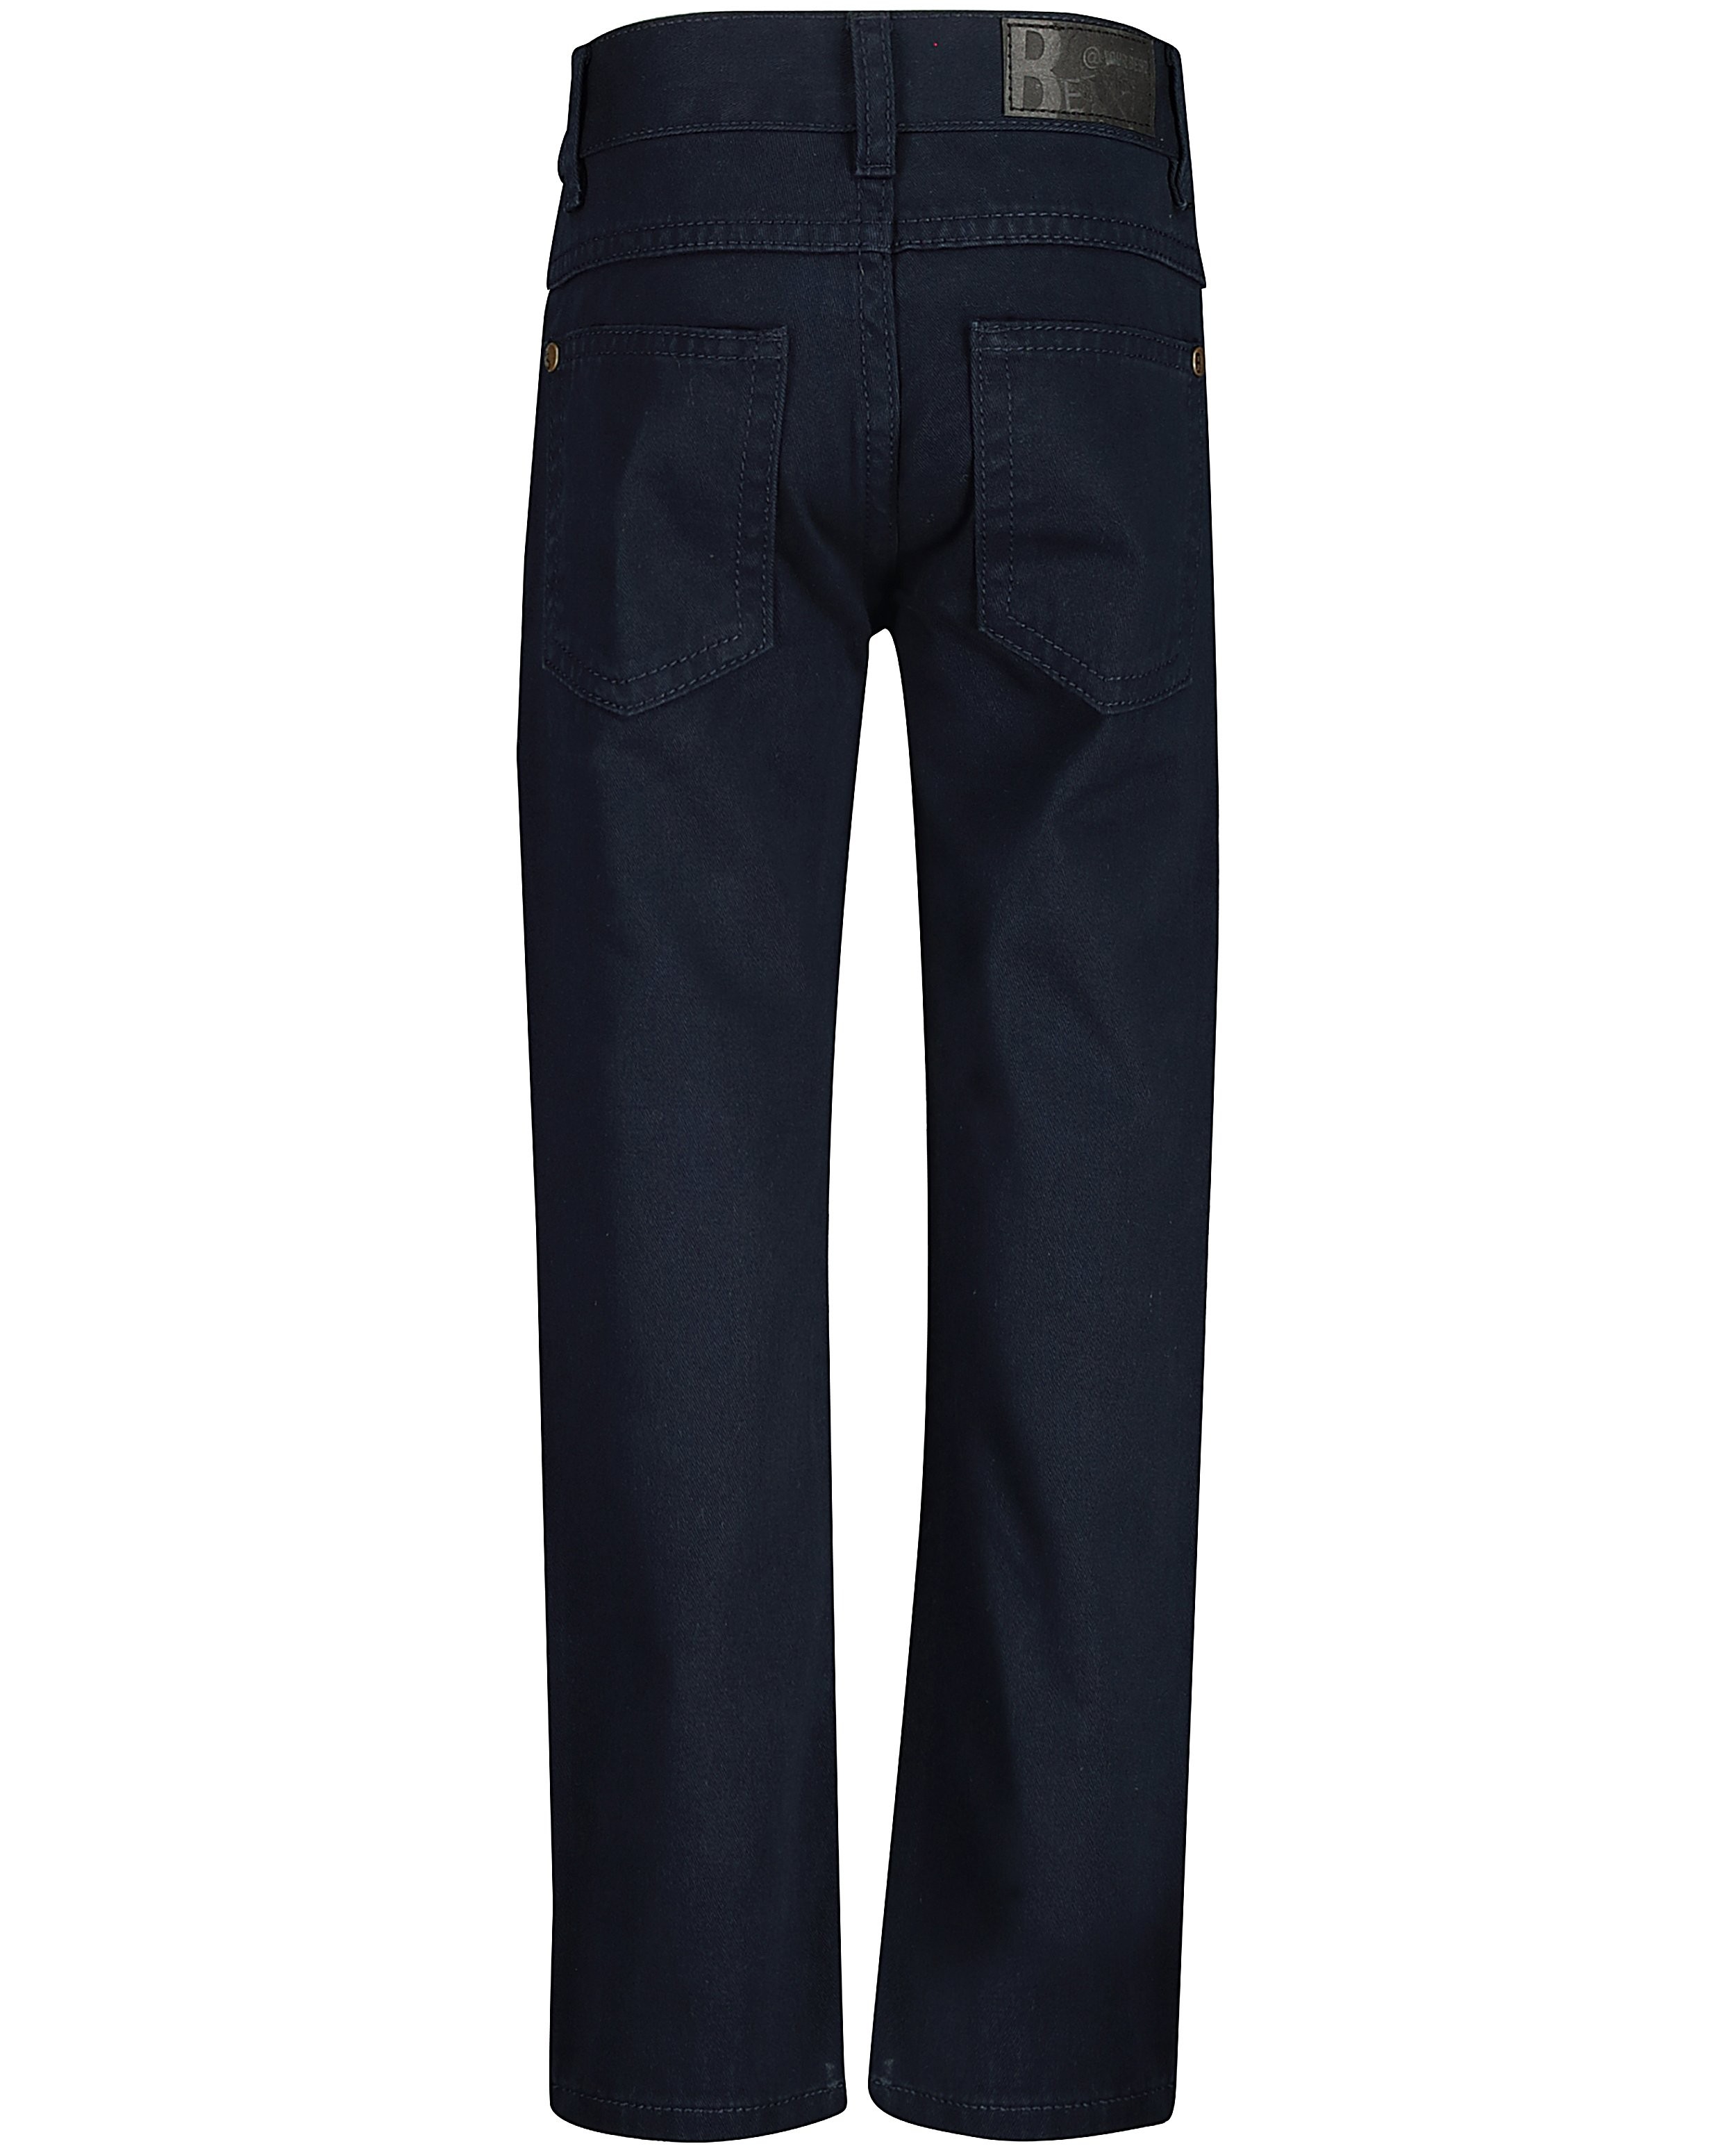 Broeken - Slim jeans SIMON BESTies, 2-7 jaar